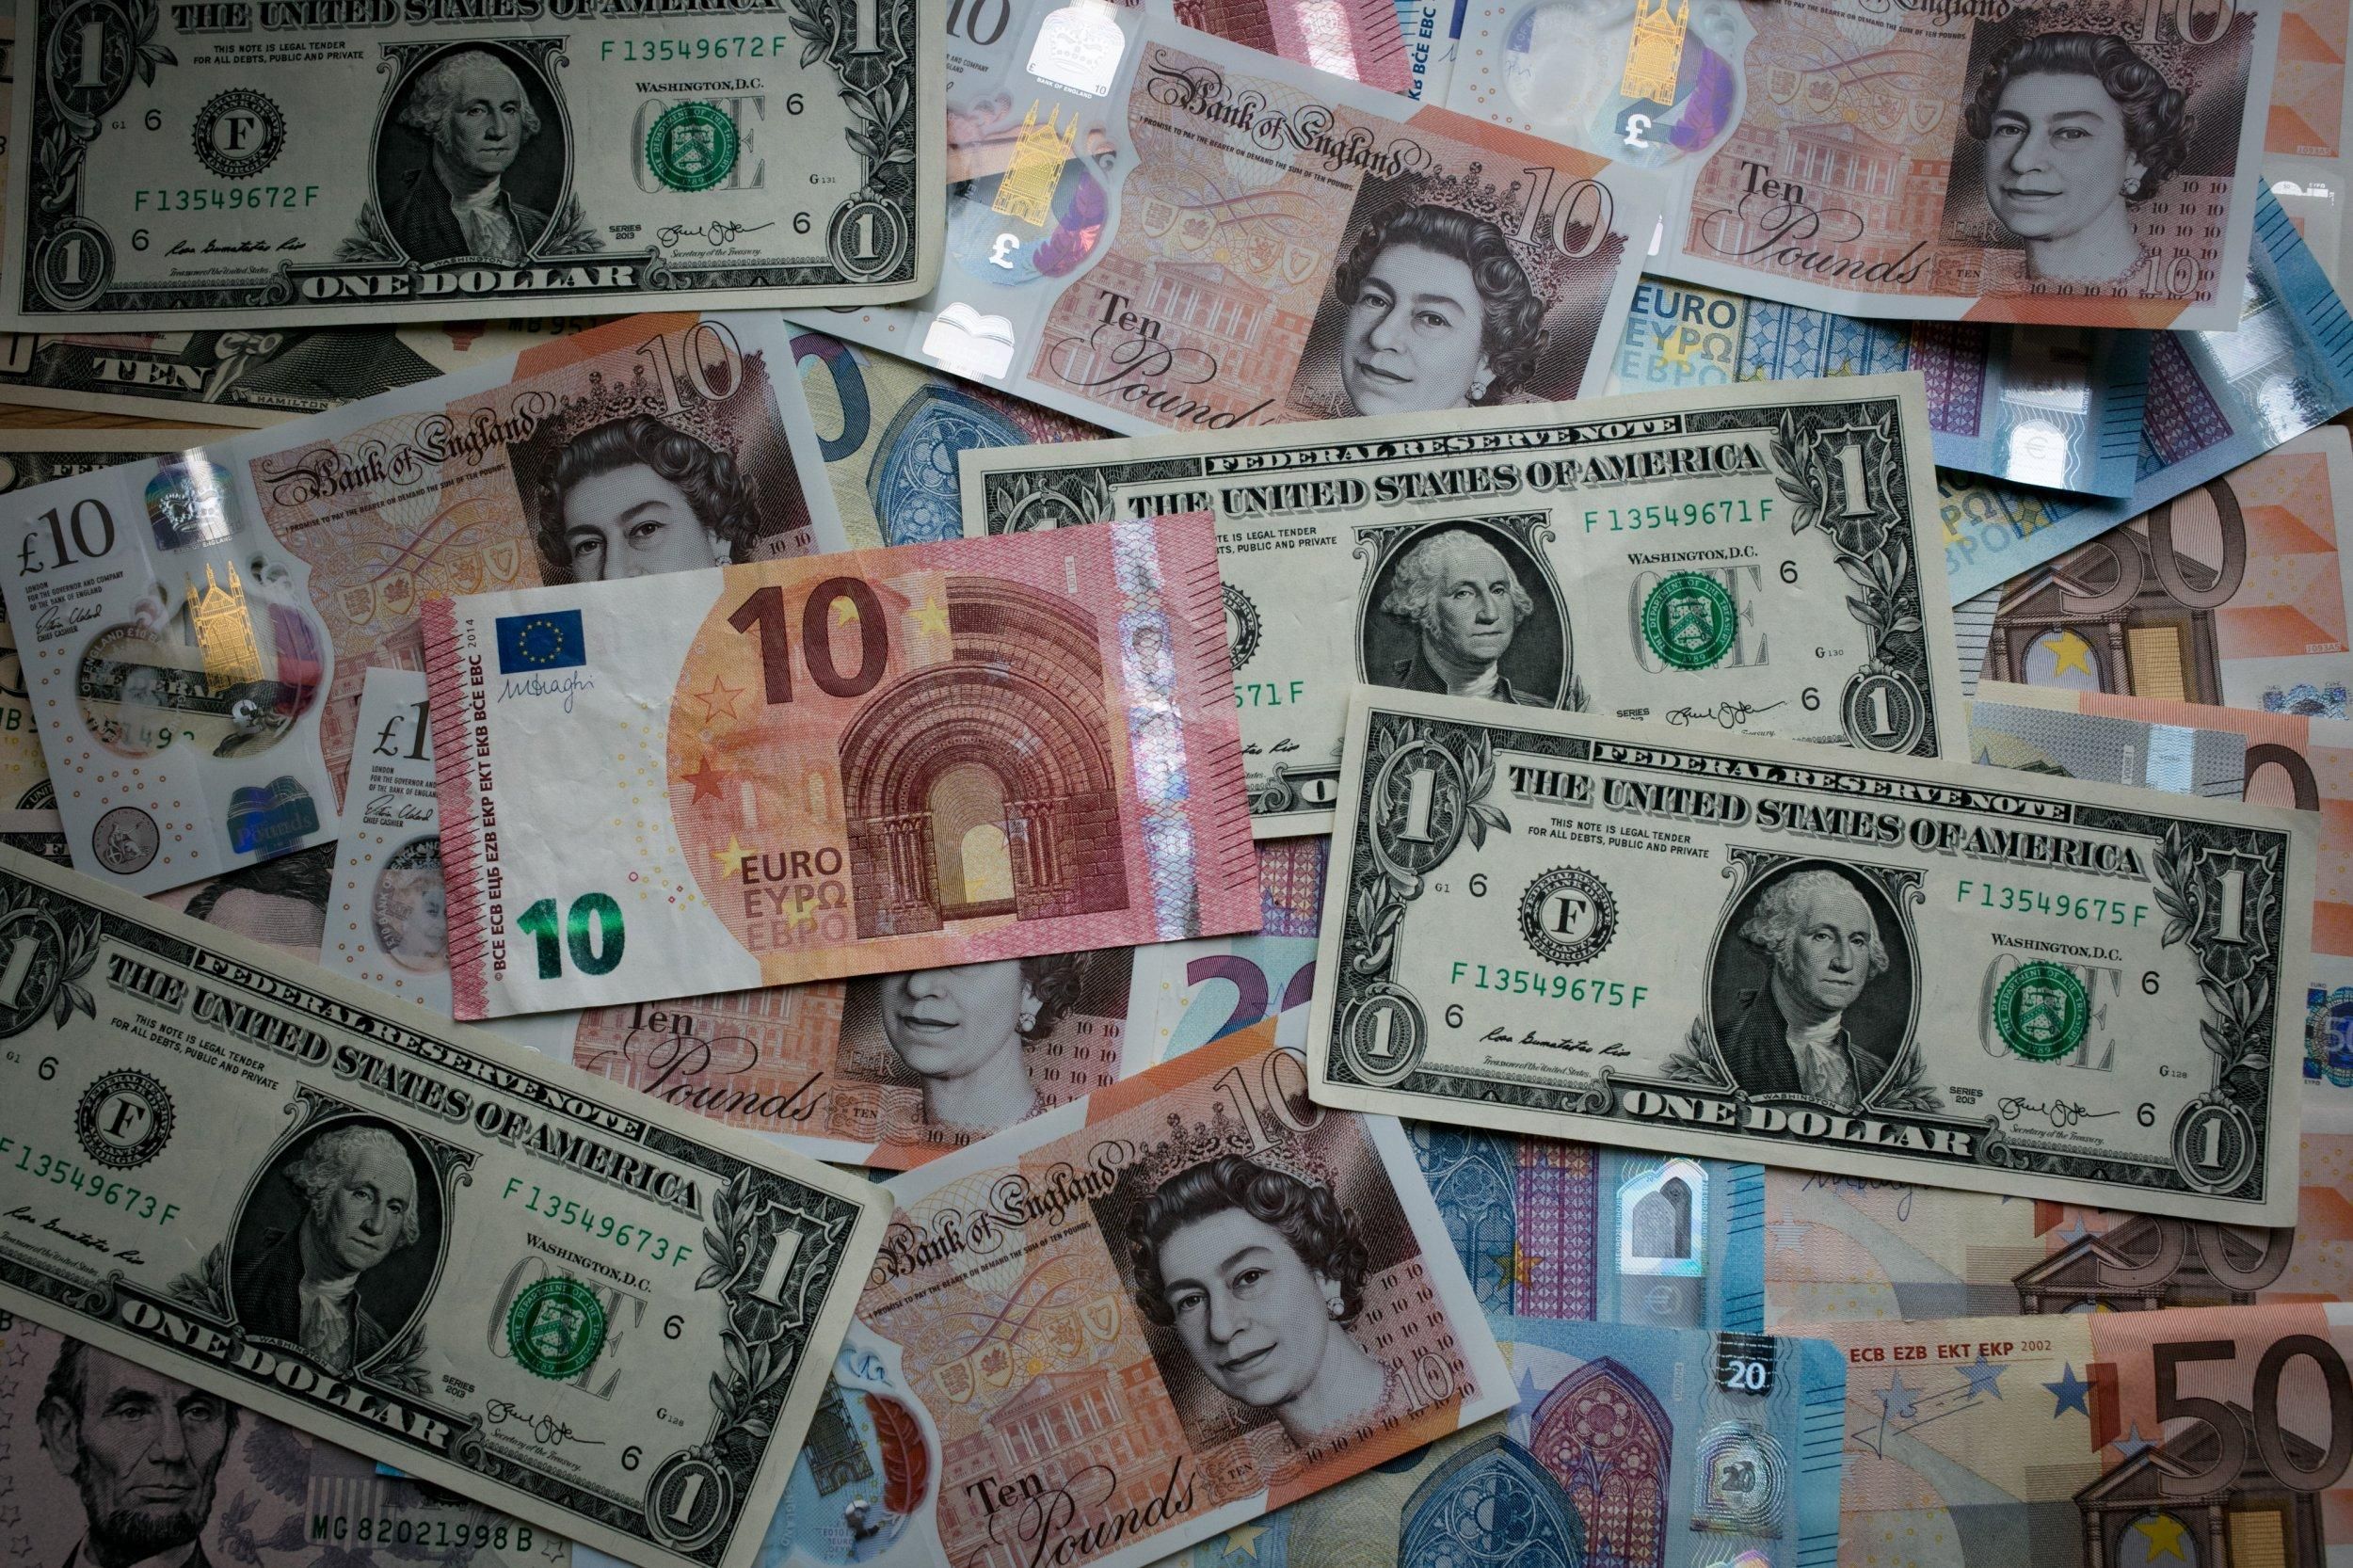 Нацбанк установил новую стоимость евро и злотого: курс валют на 6 мая